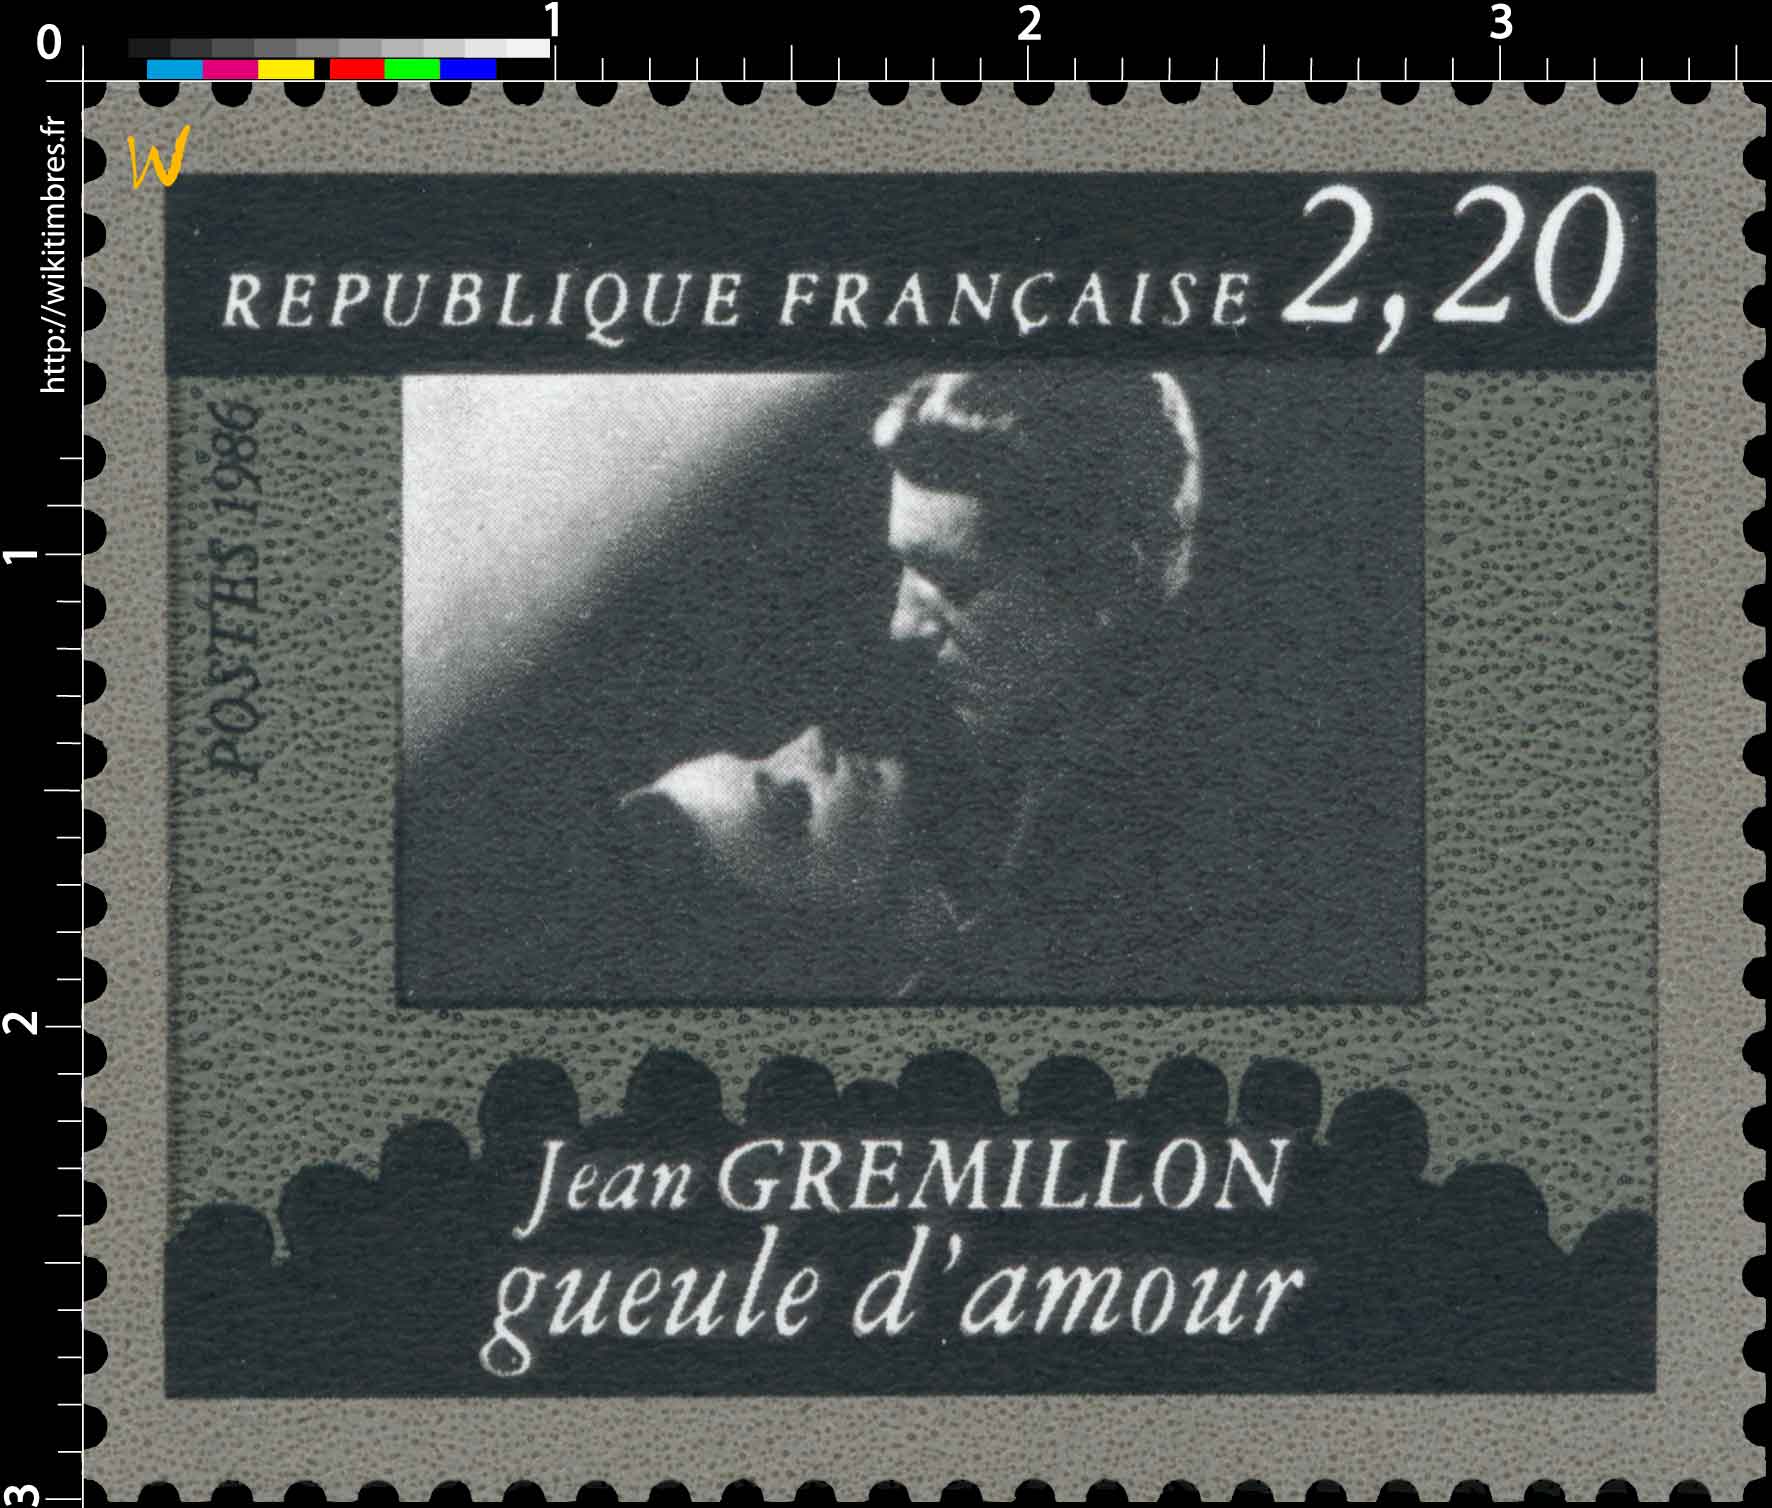 1986 Jean GRÉMILLON gueule d'amour